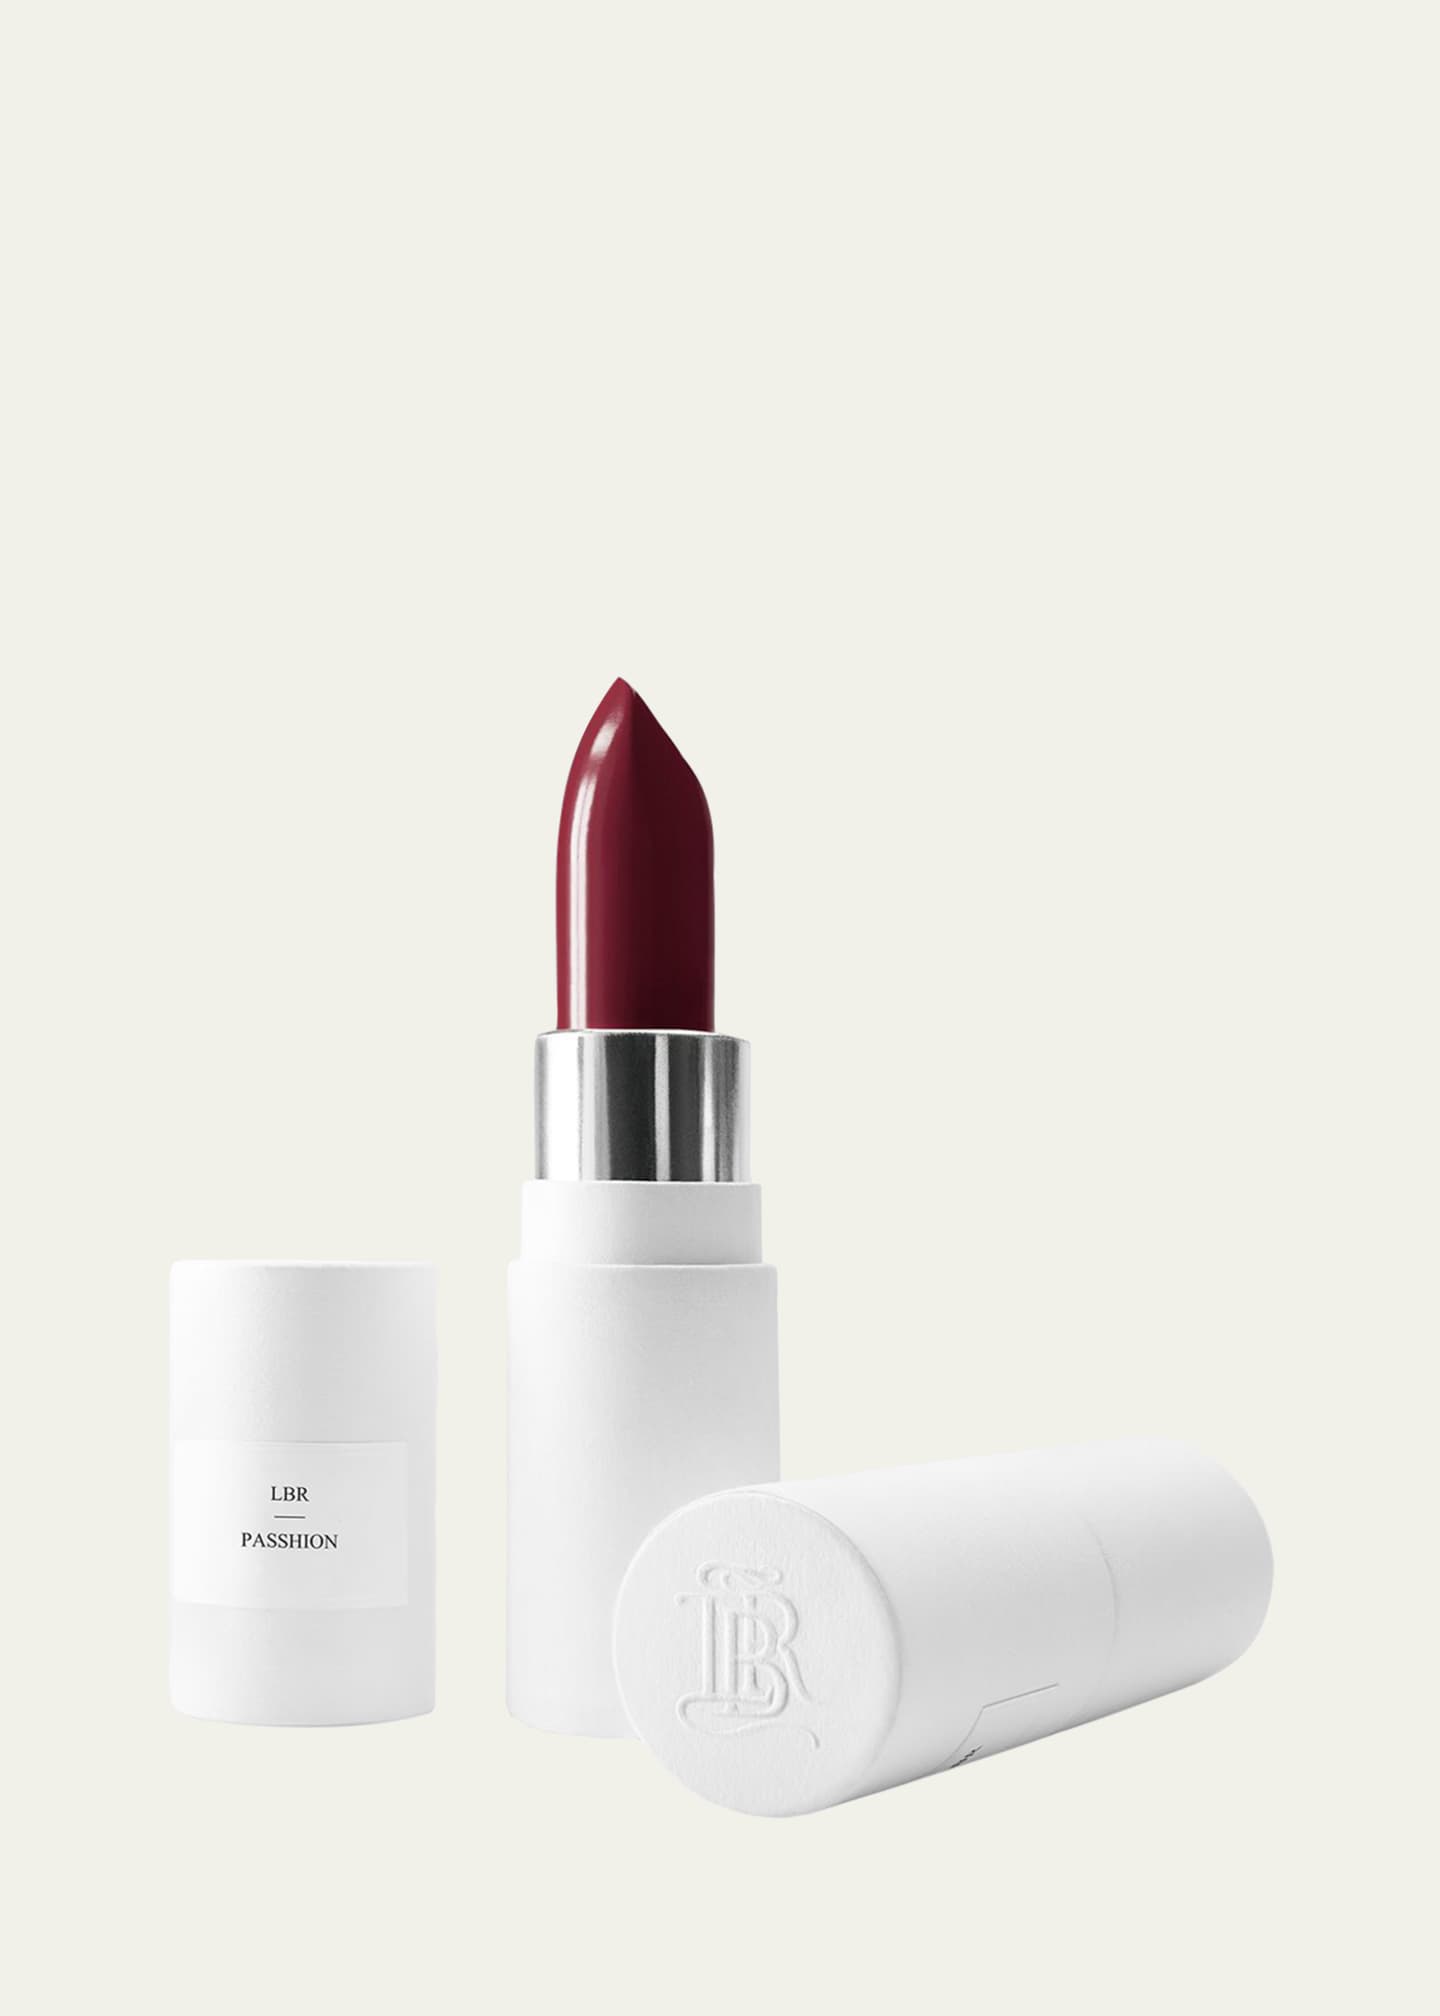 Shop La Bouche Rouge Refillable Fine Leather Lipstick Case